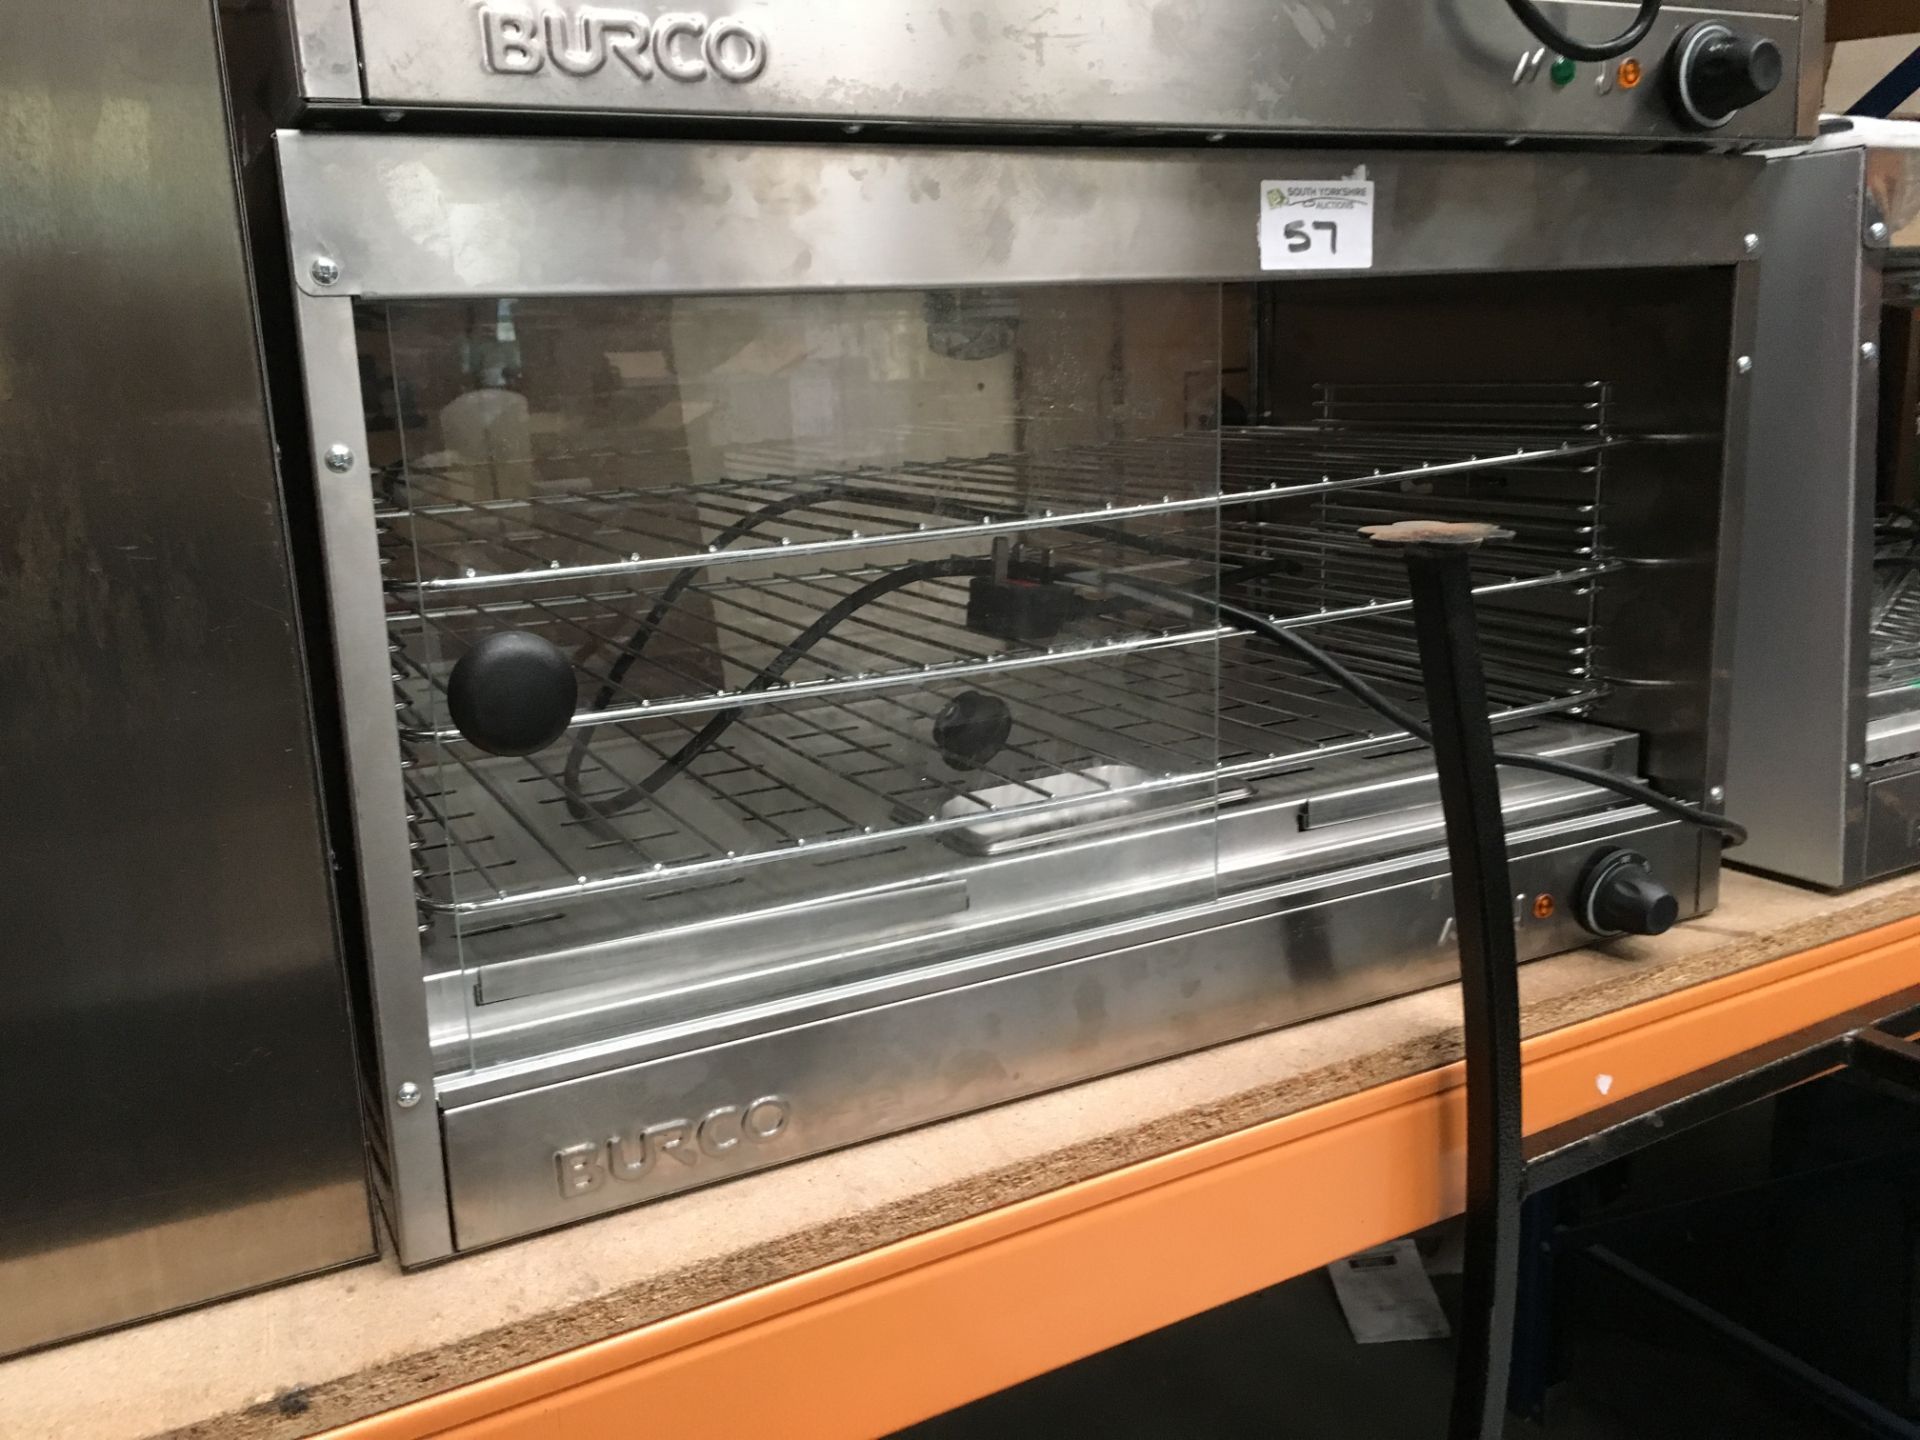 Burco Pie warmer Model PC 60